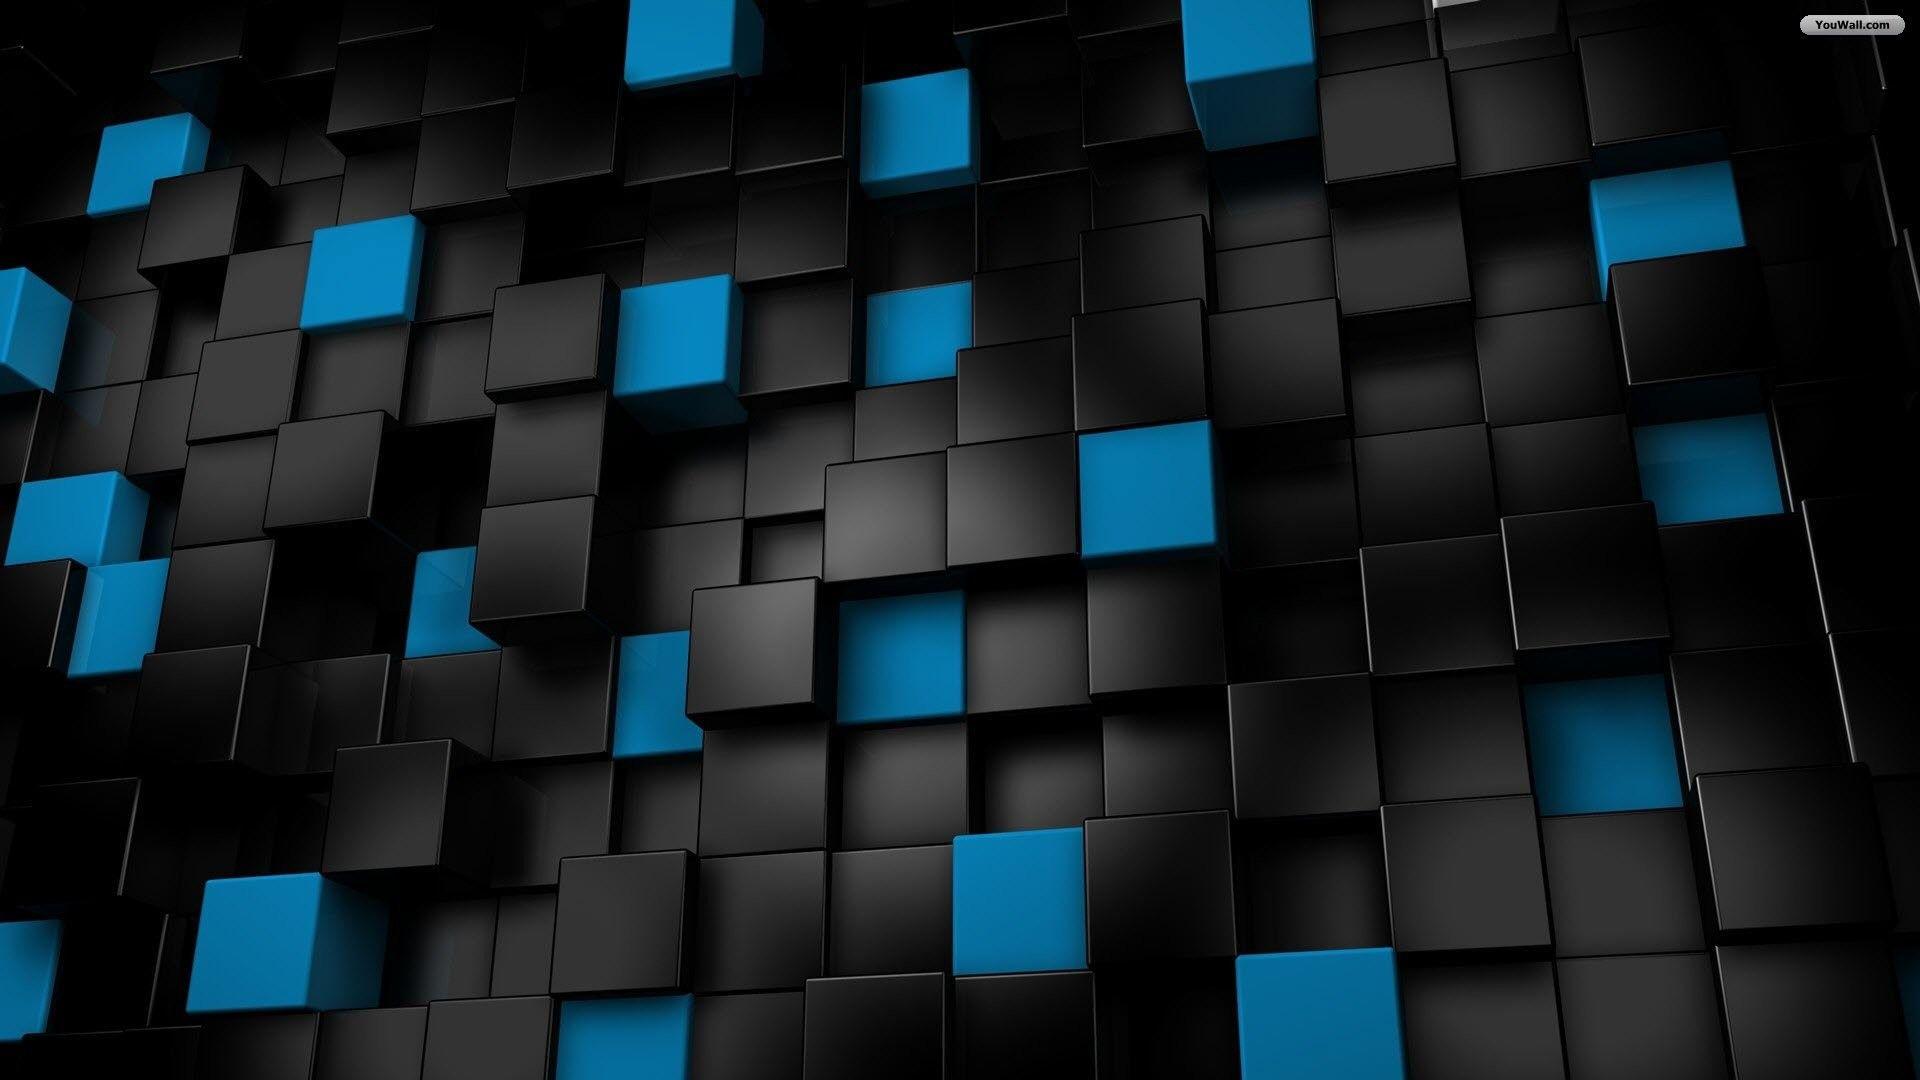 Hình nền đen xanh sẽ giúp cho màn hình của bạn trở nên độc đáo và phong phú hơn. Sự kết hợp giữa chất lượng hình ảnh sắc nét và màu sắc độc đáo sẽ tạo ra một không gian hoàn hảo để hiển thị những hình ảnh của bạn. Hãy tạo không gian chủ đề đen xanh của riêng bạn và tận hưởng nó ngay bây giờ.